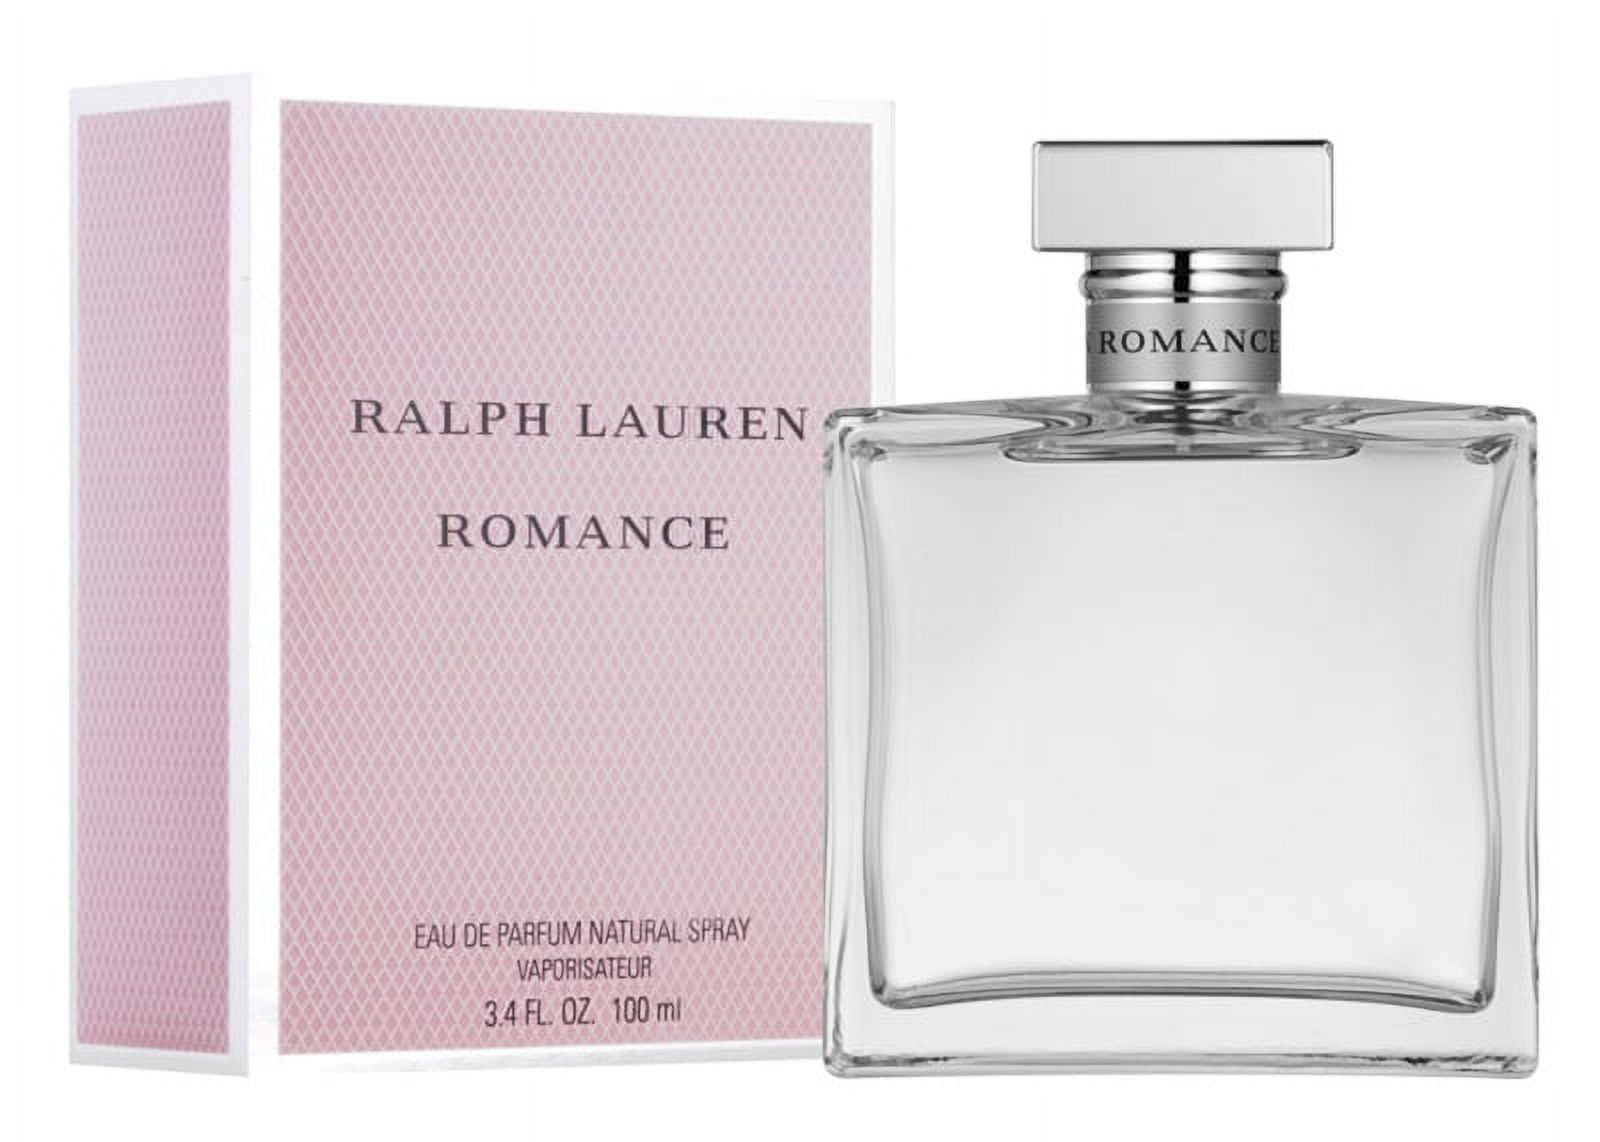 Ralph Lauren Romance Summer Blossom EDP 3.4 oz 100 ml Women